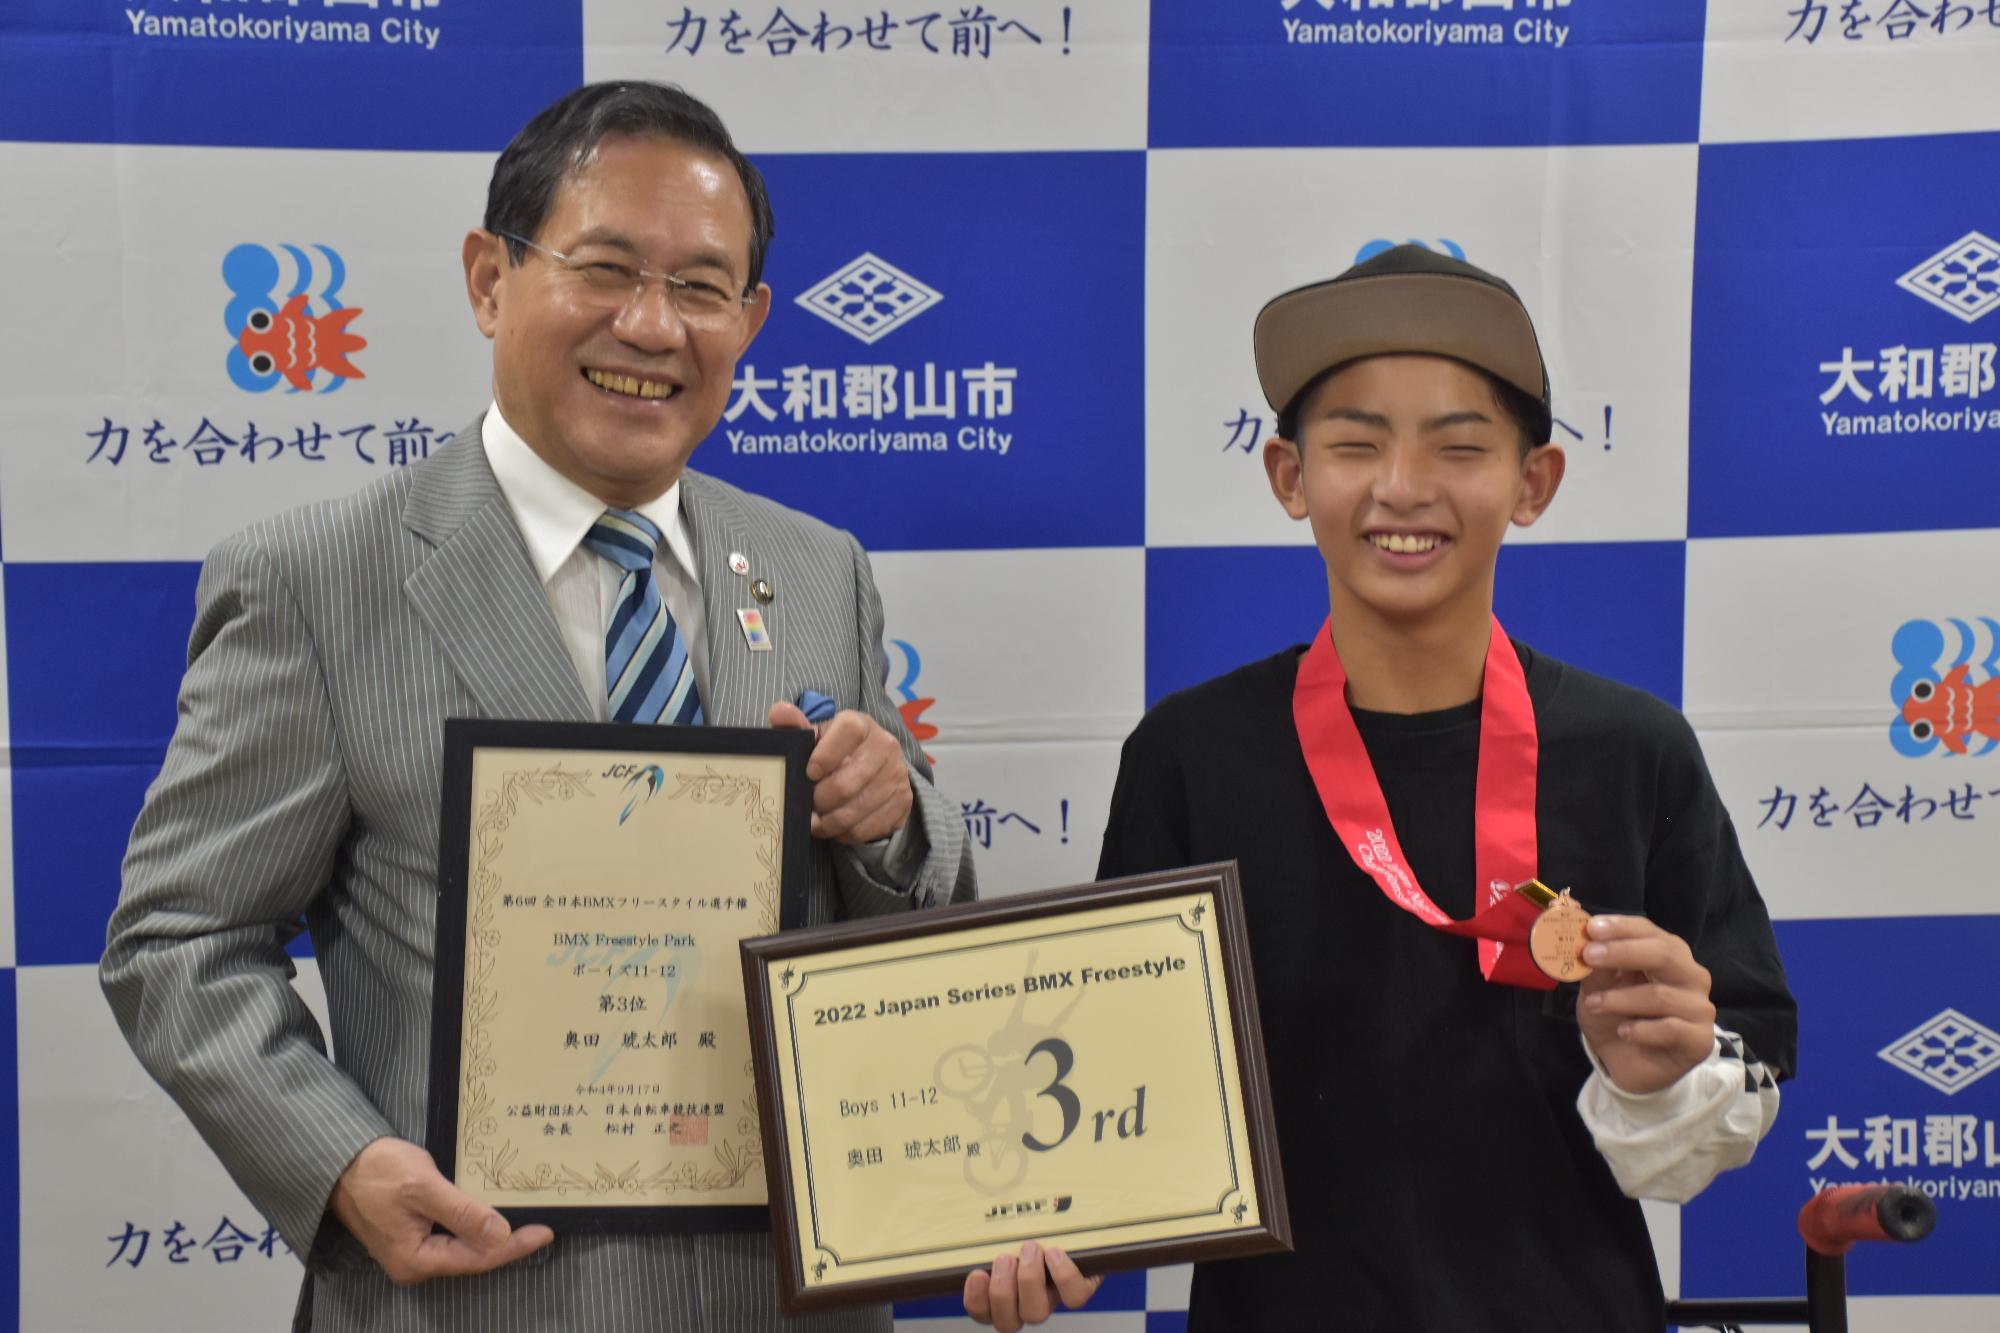 第6回全日本BMXフリースタイル選手権の結果報告のための市長表敬訪問の様子